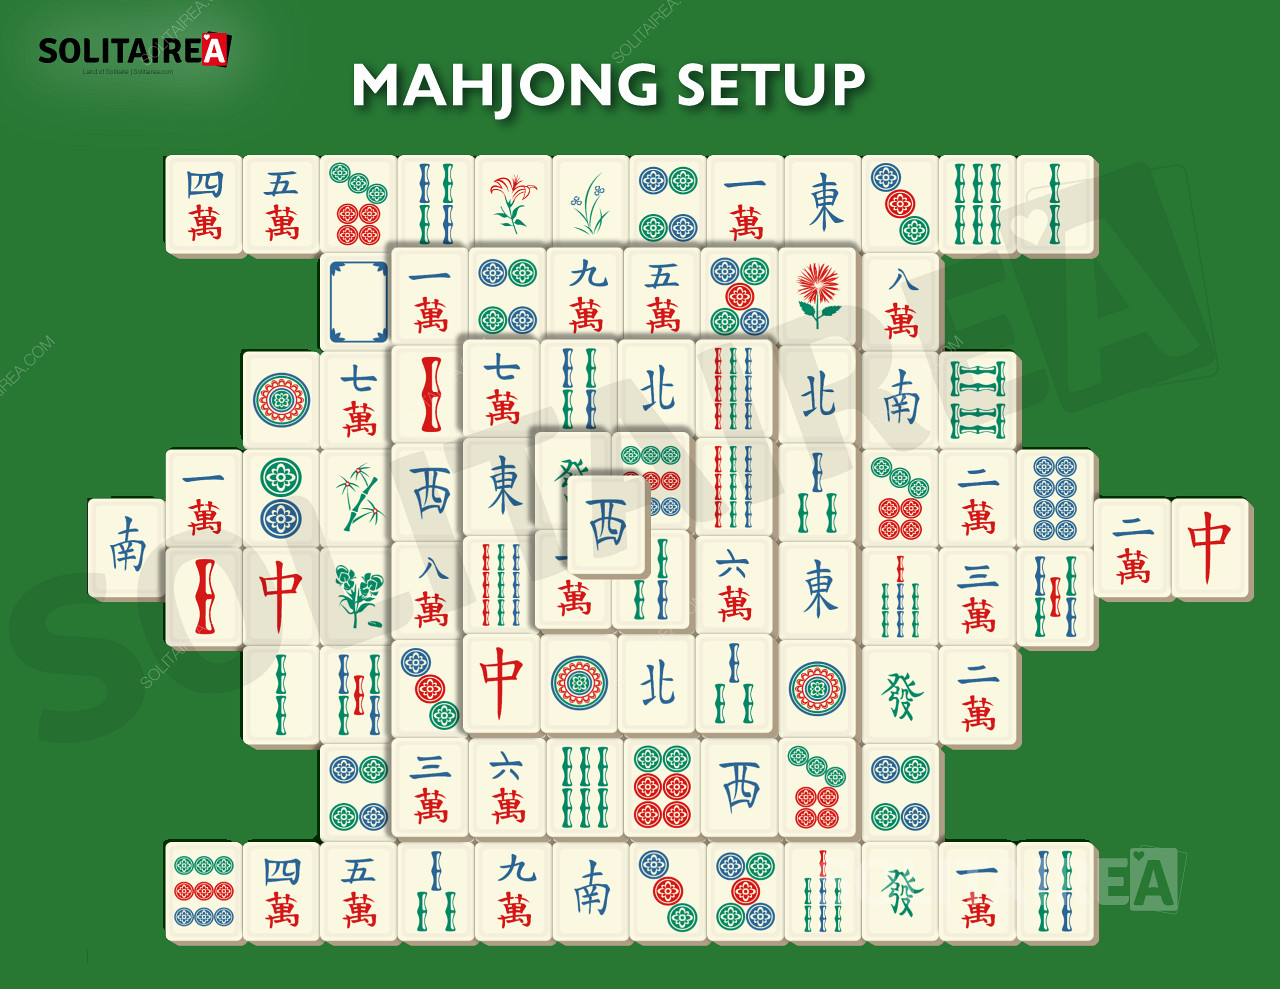 Mahjong Solitaire kurulumunun nasıl göründüğünü gösteren resim.